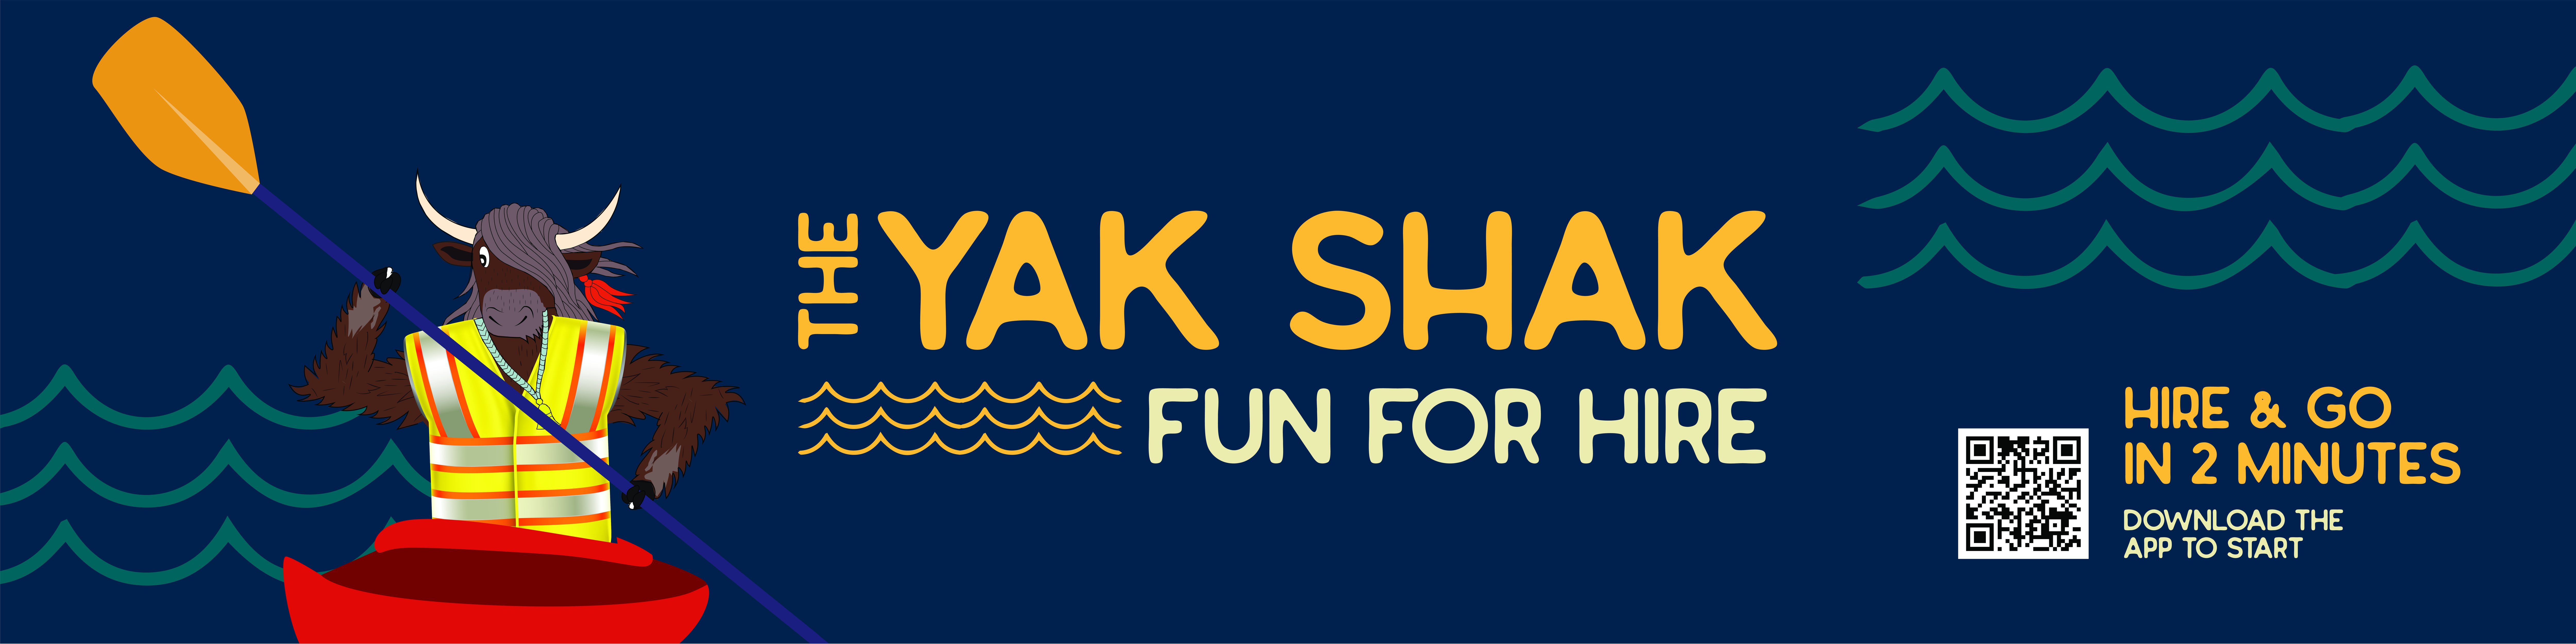 Yak Shak